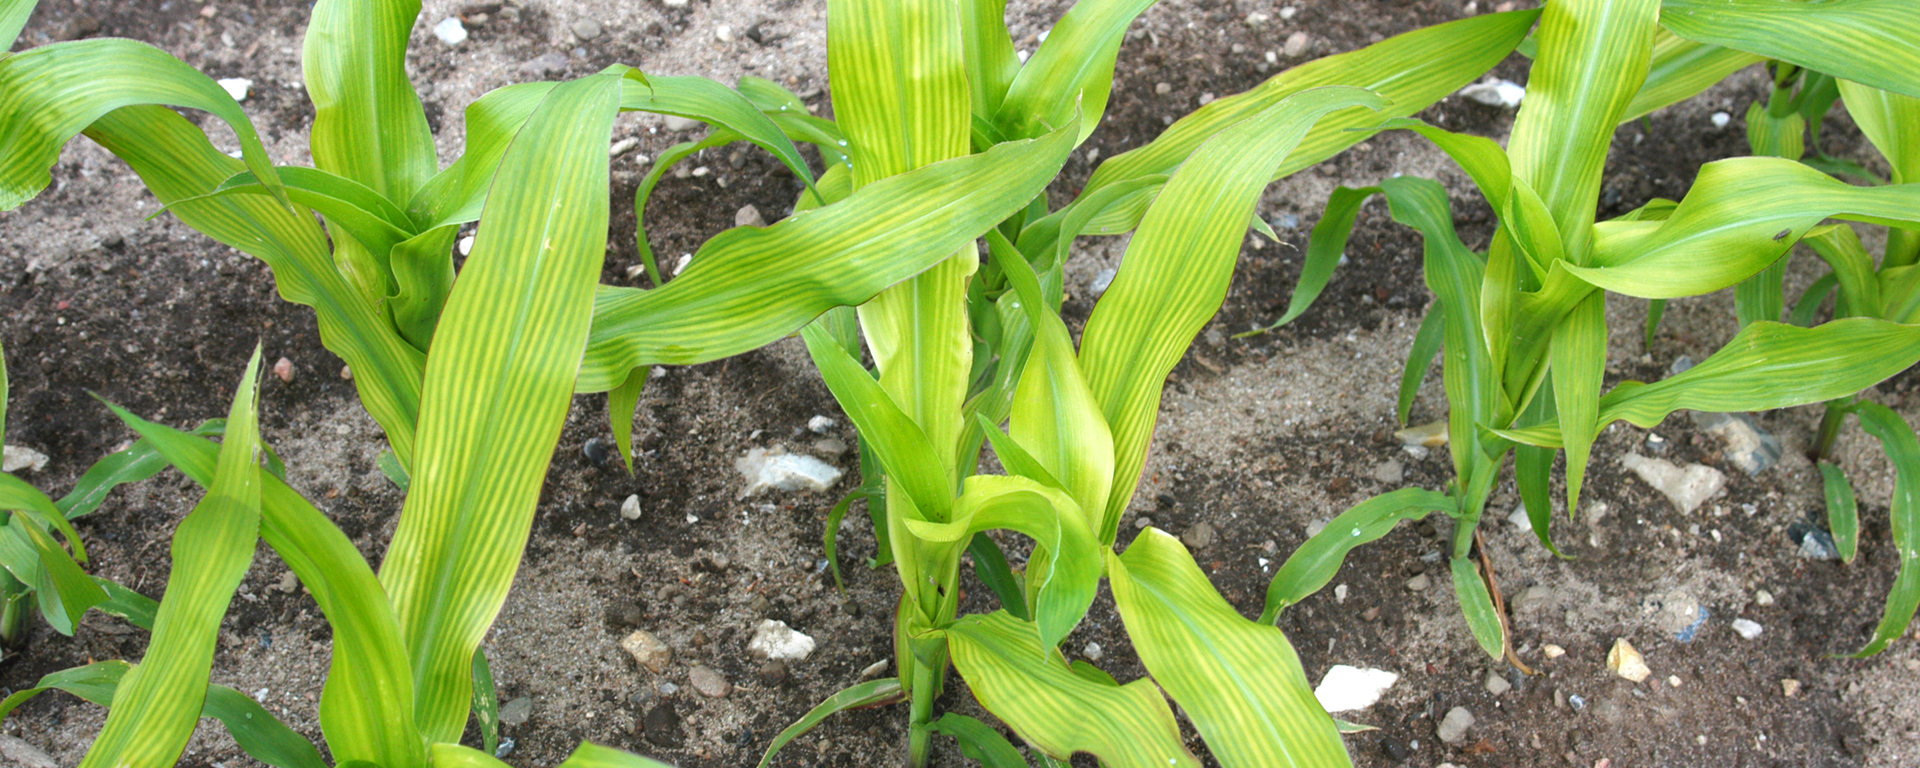 Die jungen Maispflanzen zeigen streifige Aufhellungen und Vergilbungen an mittleren und jüngeren Blättern als akuten Schwefelmangel an.